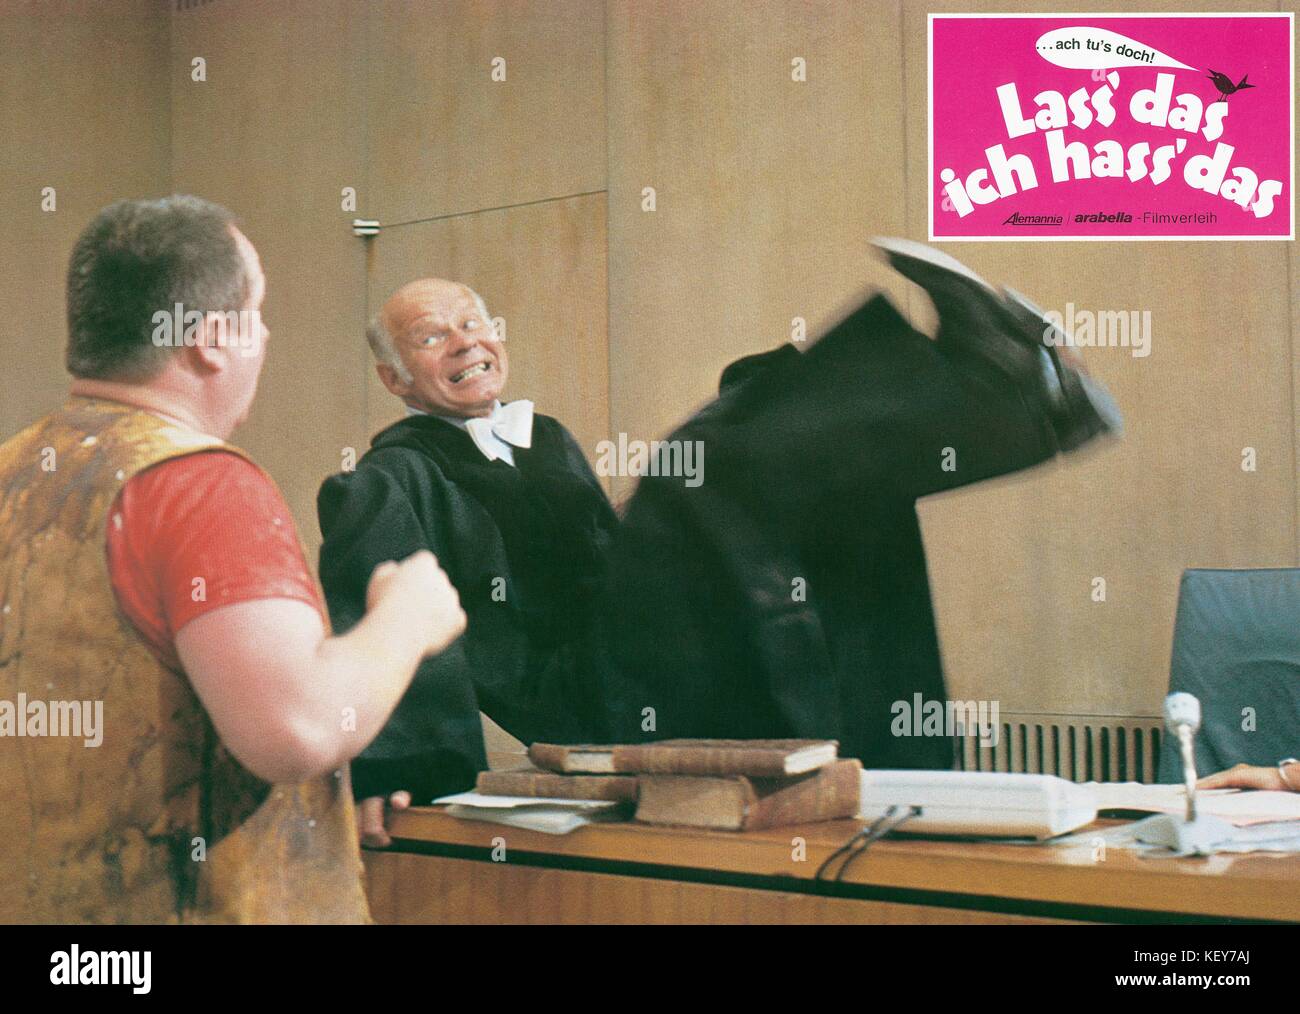 Lass das - ich hass das, aka: Die Supermasche, Deutschland 1983, Regie: Horst Hächler, Darsteller: Ralf Wolter Stock Photo